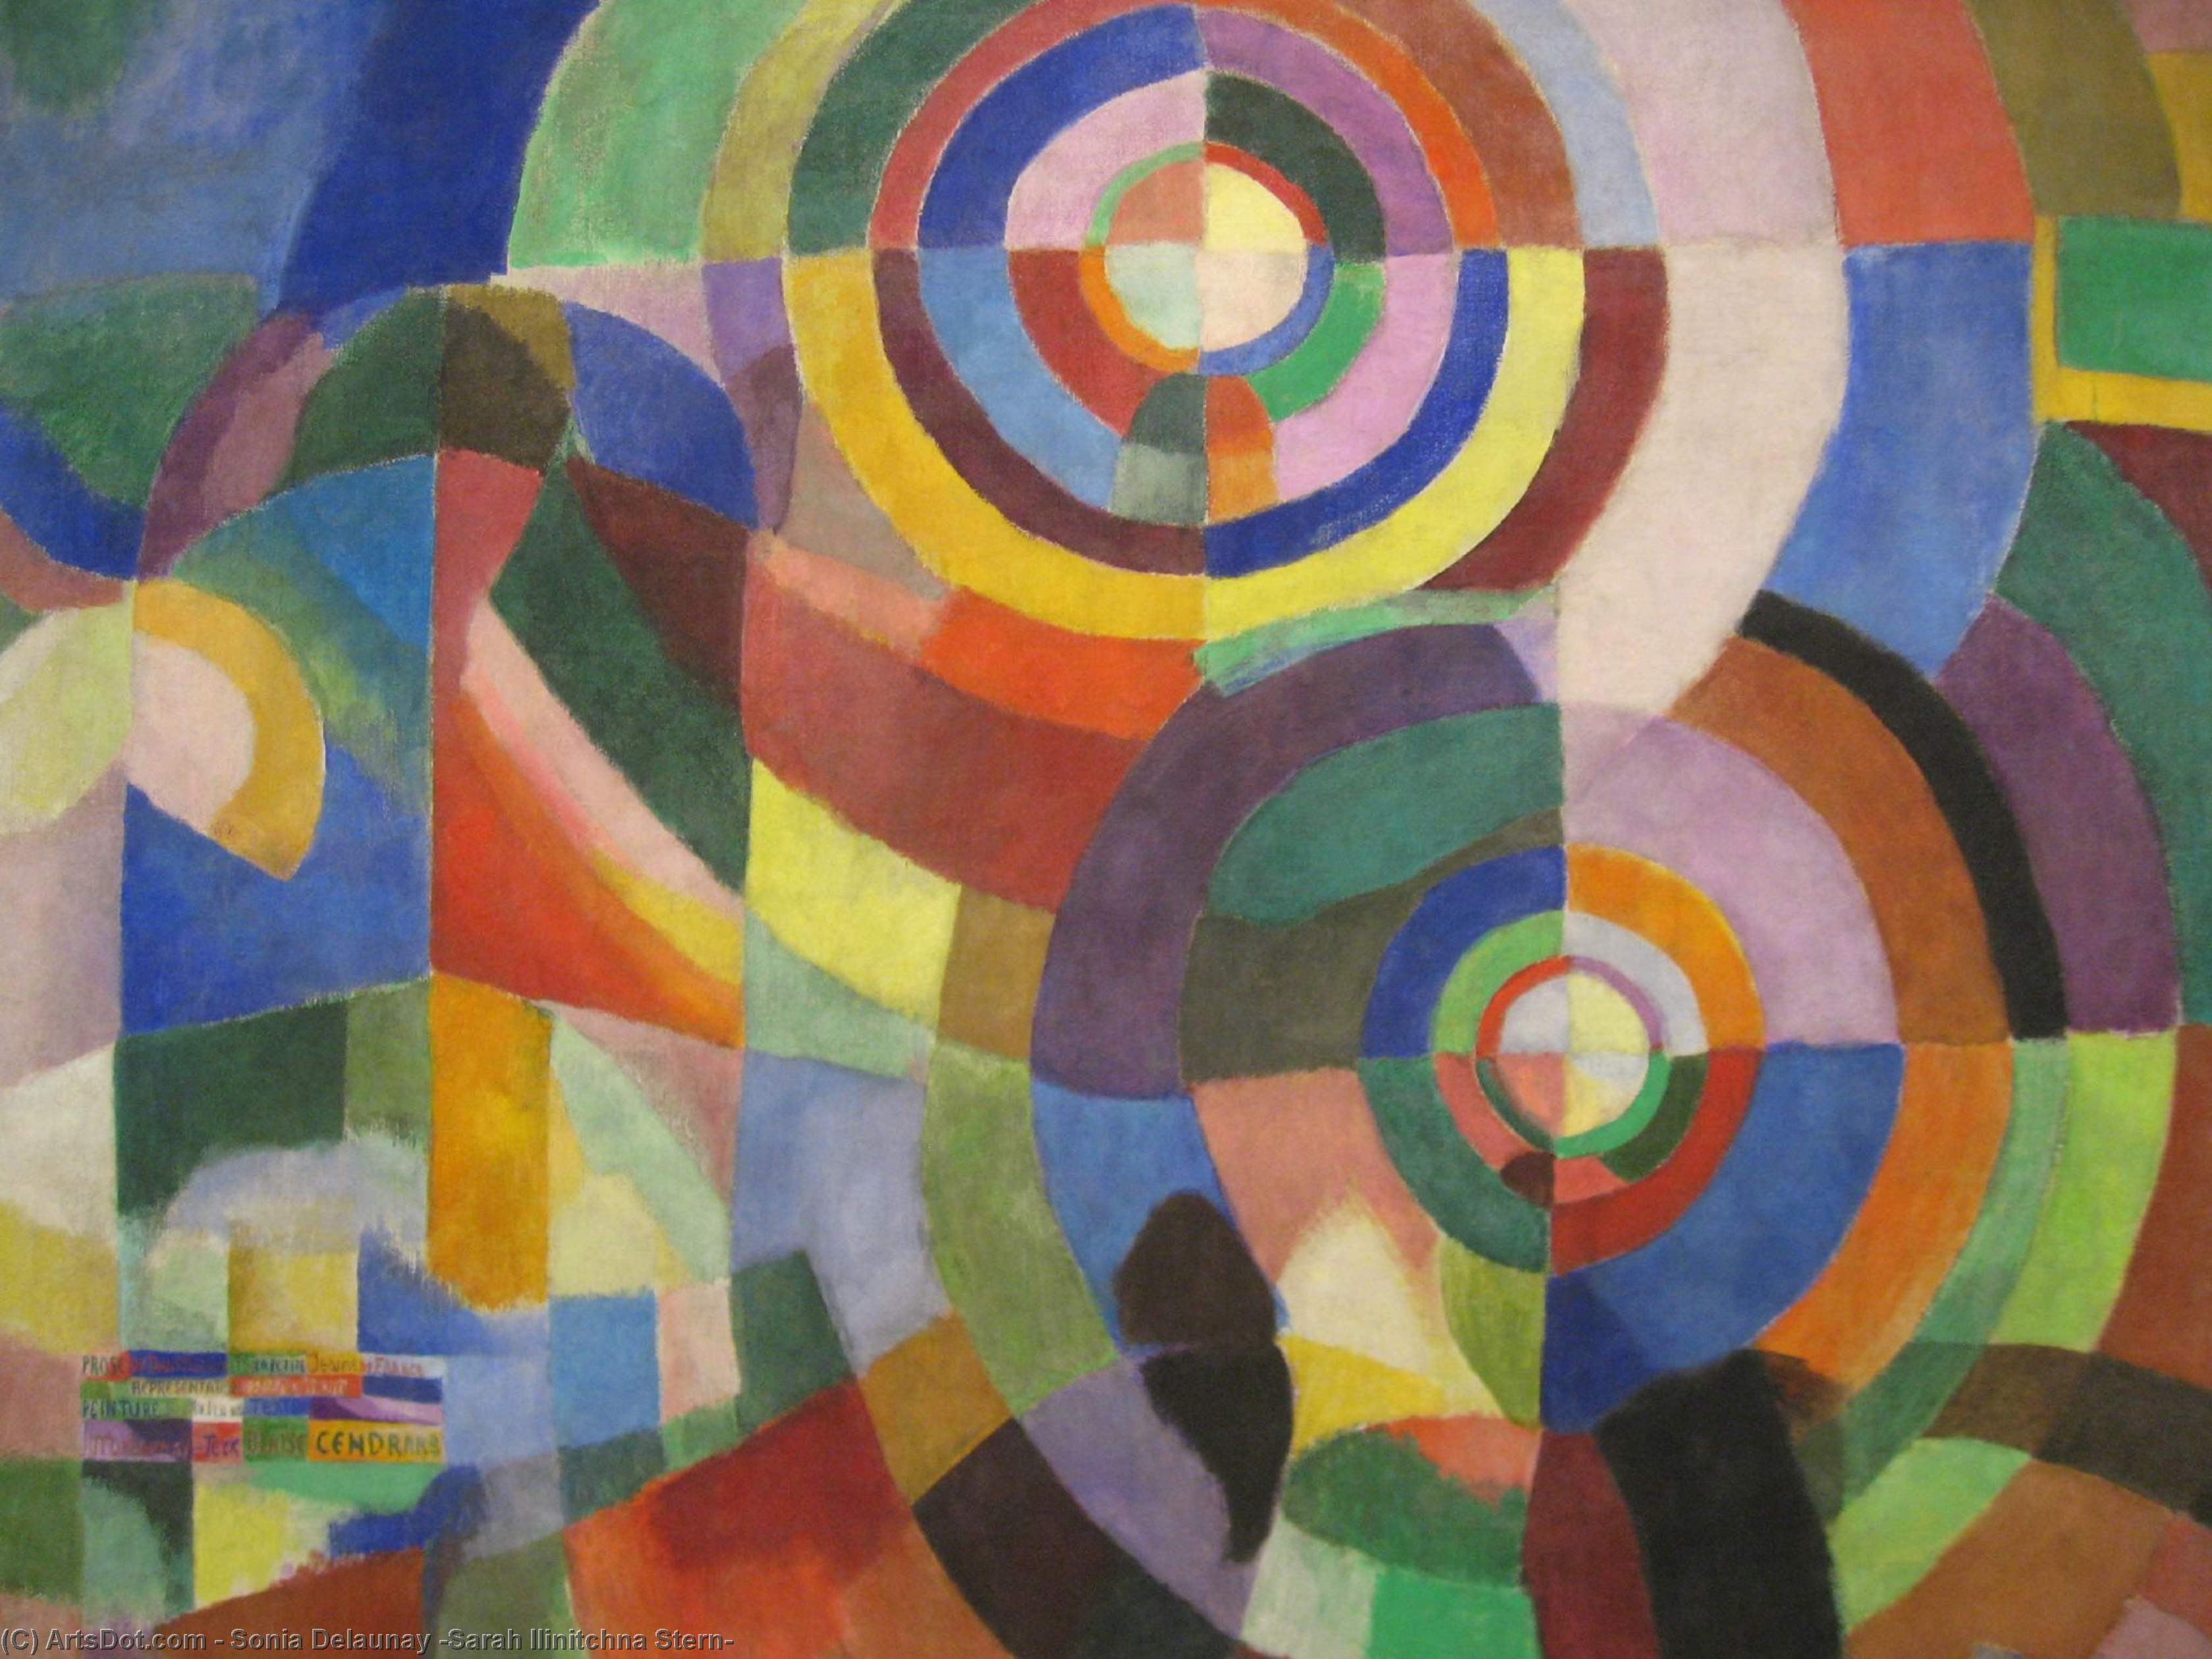 Wikioo.org - Bách khoa toàn thư về mỹ thuật - Vẽ tranh, Tác phẩm nghệ thuật Sonia Delaunay (Sarah Ilinitchna Stern) - Electric prisms